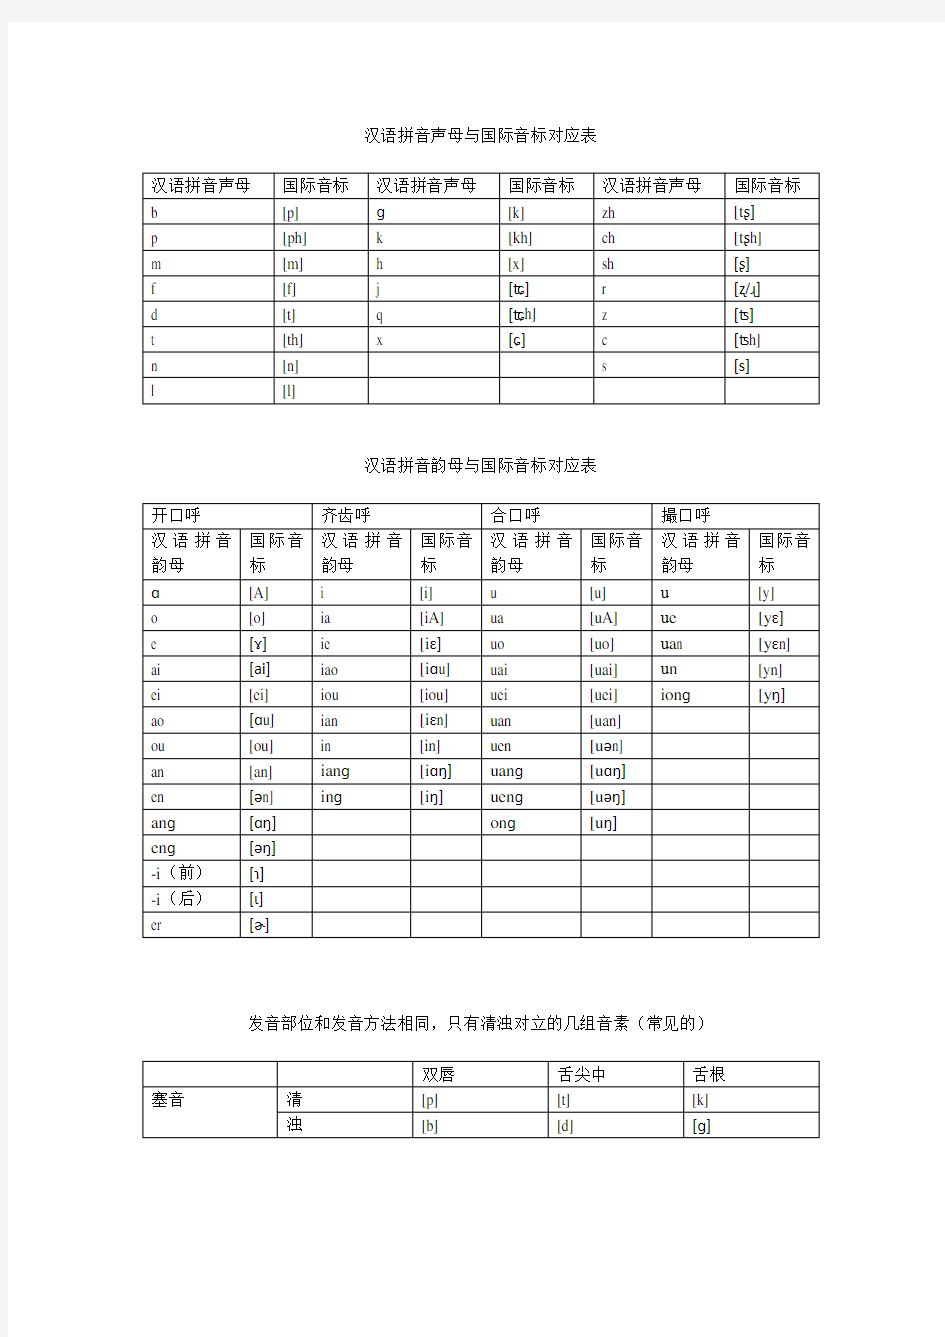 汉语拼音与国际音标对应表